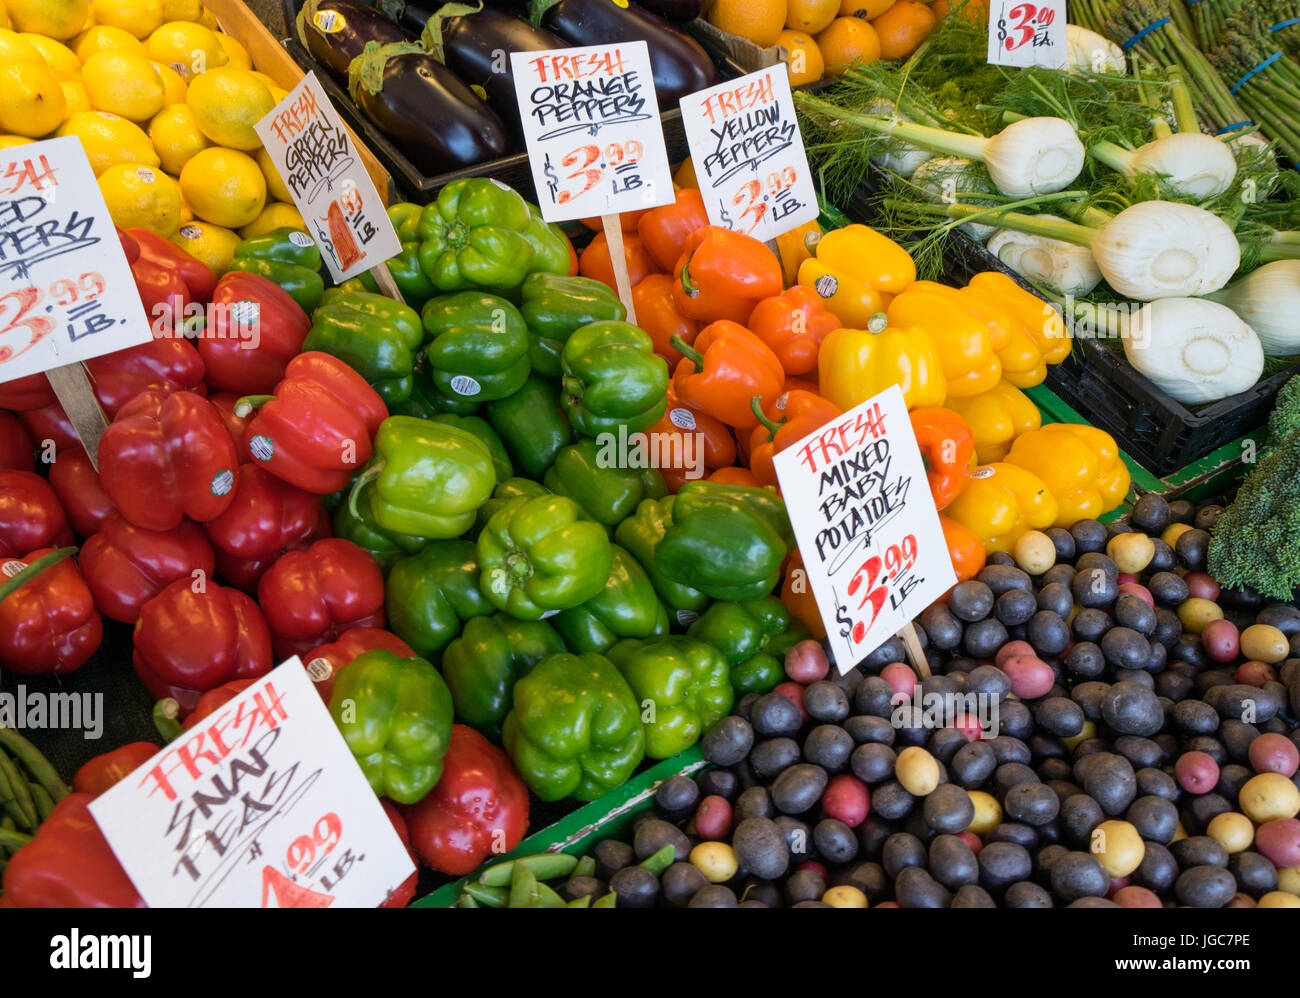 Fresh vegatables at a farm market Stock Photo